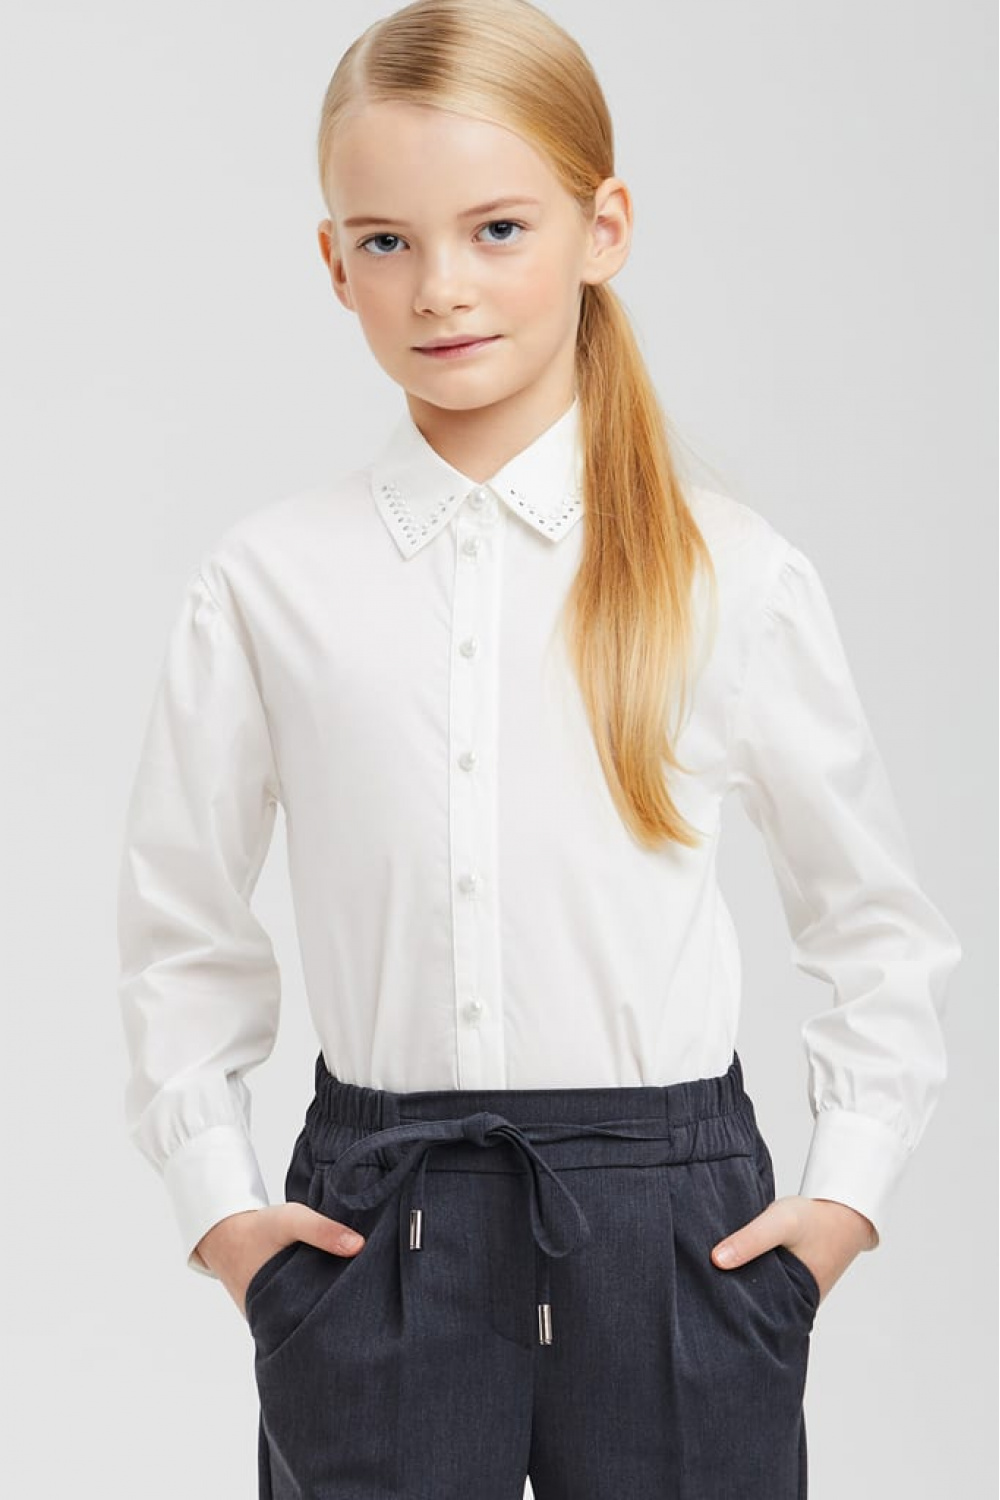 Хлопковая блузка с пуговицами-жемчужинами 